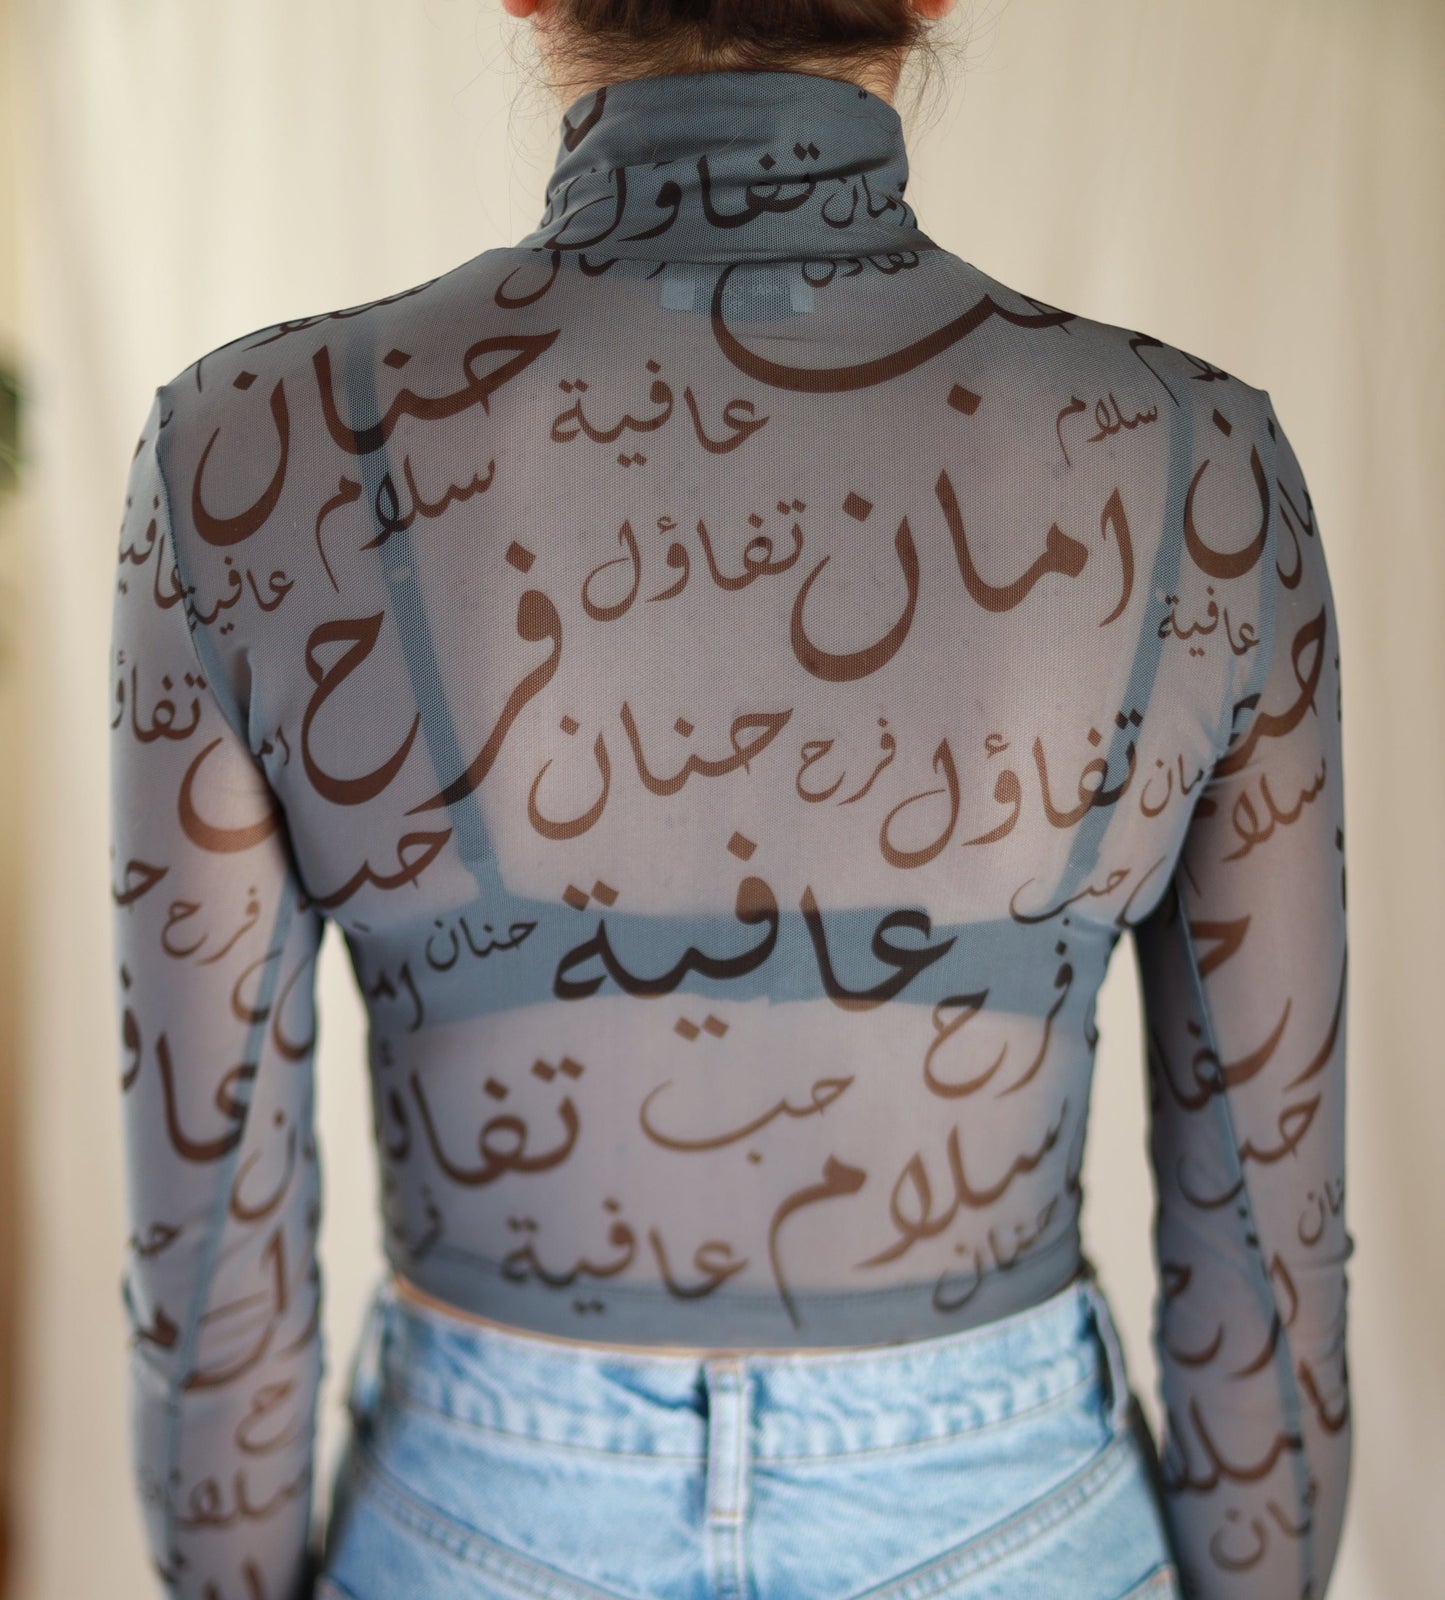 Calligraphy Sheer Top by Farah Daylaq Deerah